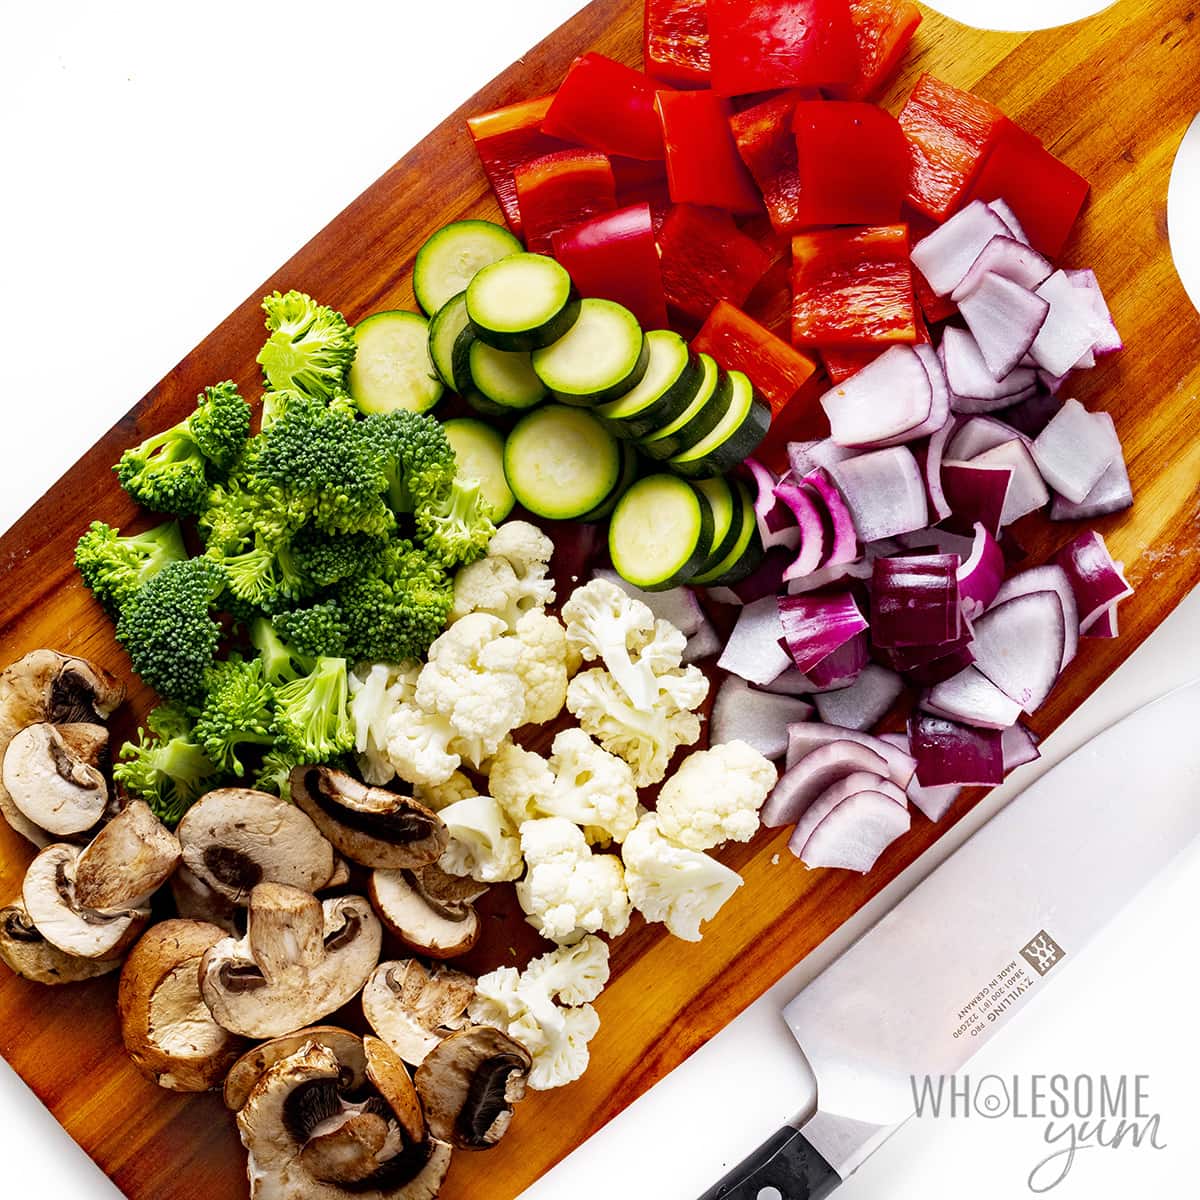 Vegetables cut on a cutting board.